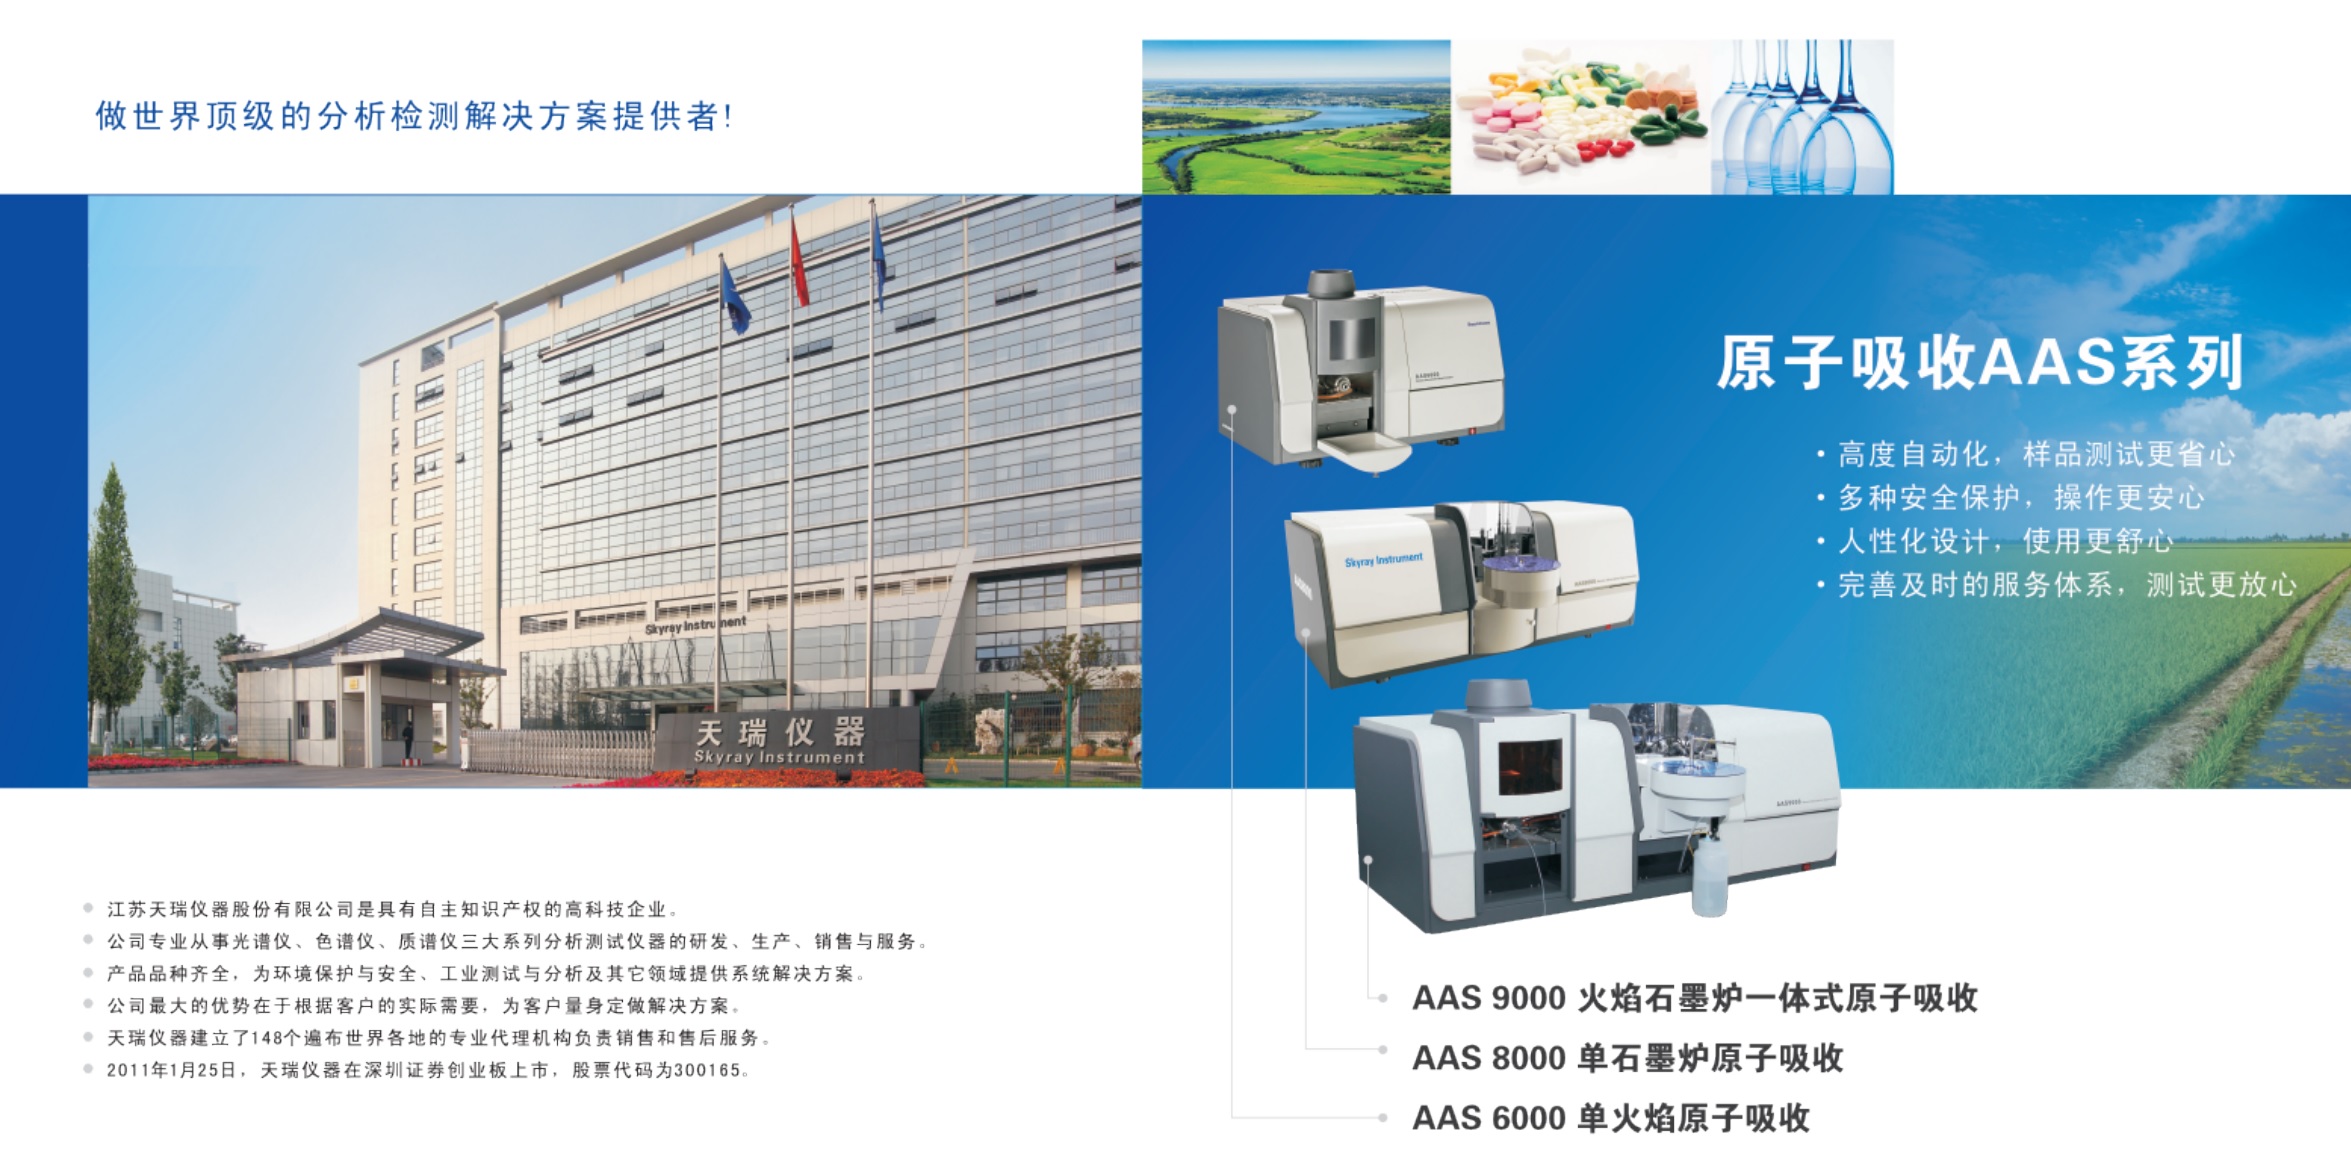 江苏天瑞仪器股份有限公司-原子吸收分光光度计AAS6000 AAS8000 AAS9000 系列